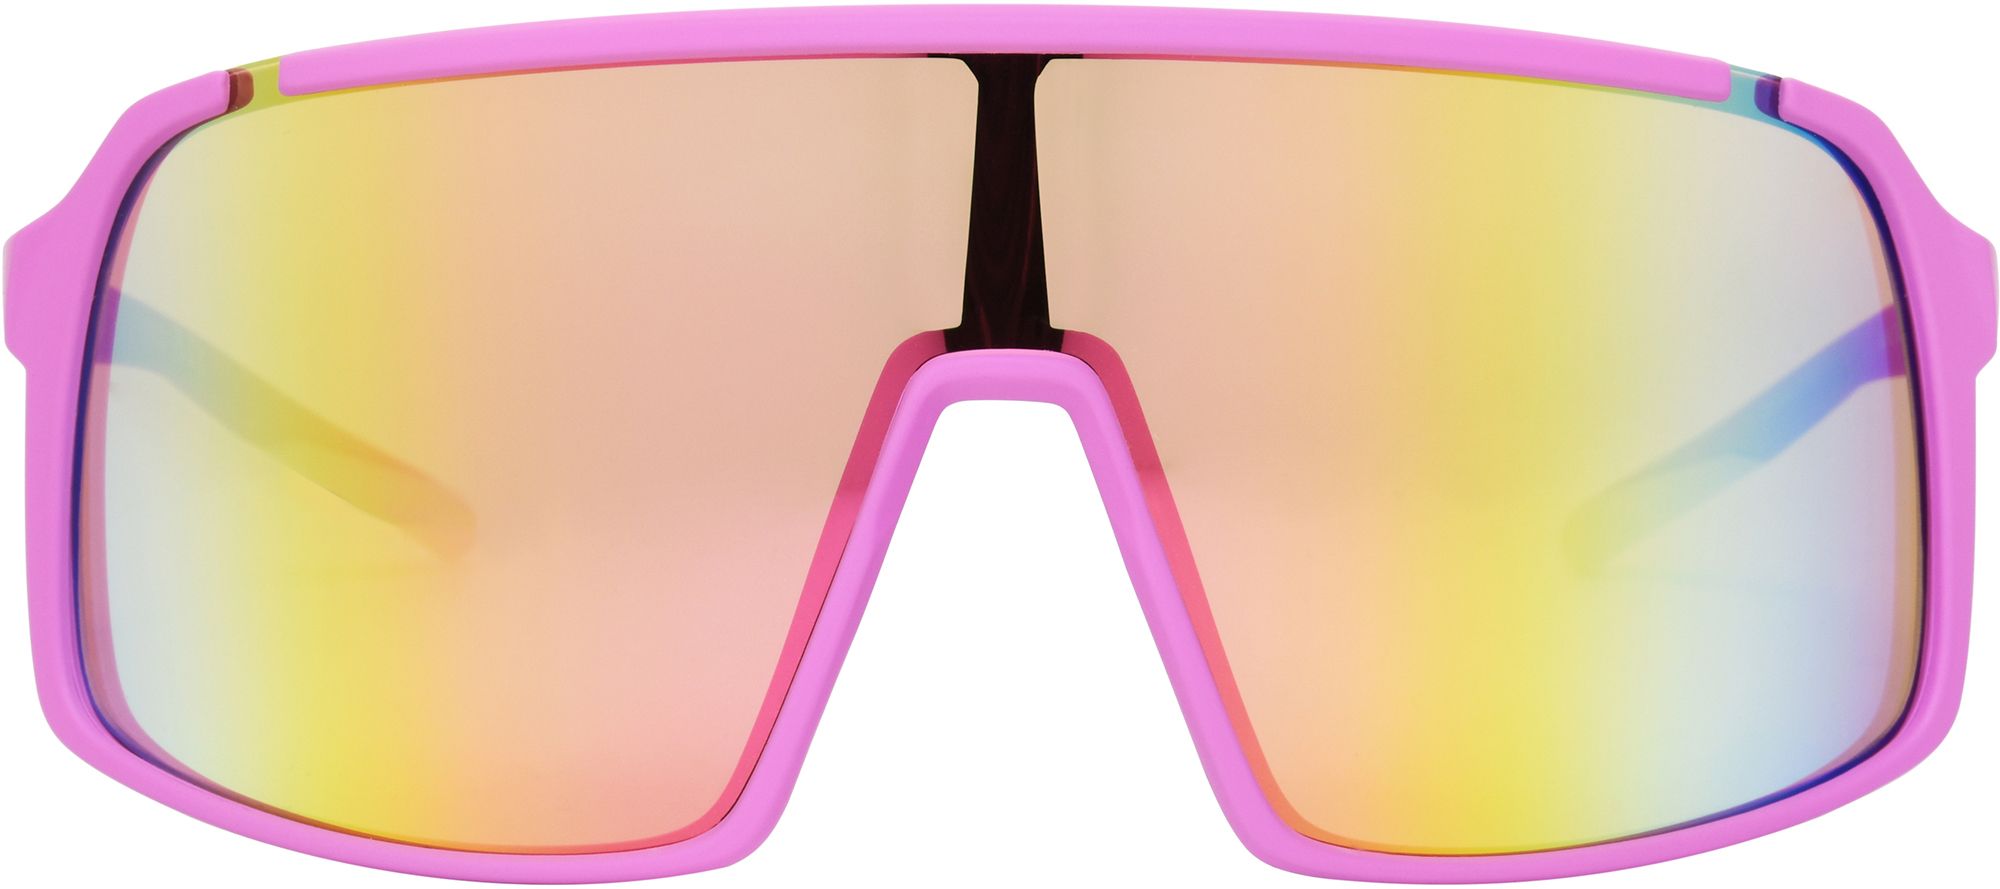 DSG Full Rim Shield Sunglasses